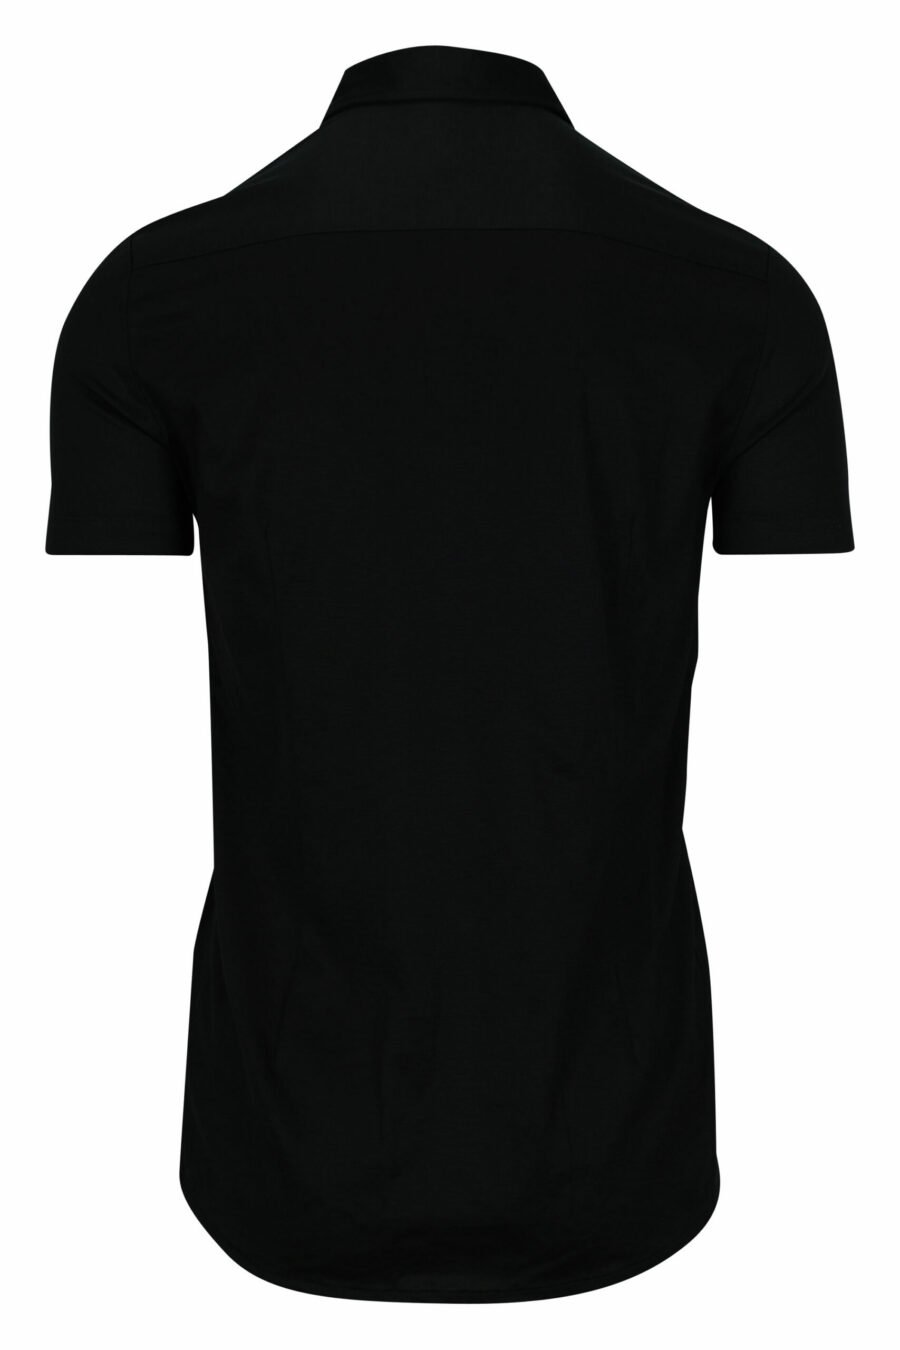 Camisa negra manga corta con minilogo águila - 8056861420206 1 scaled